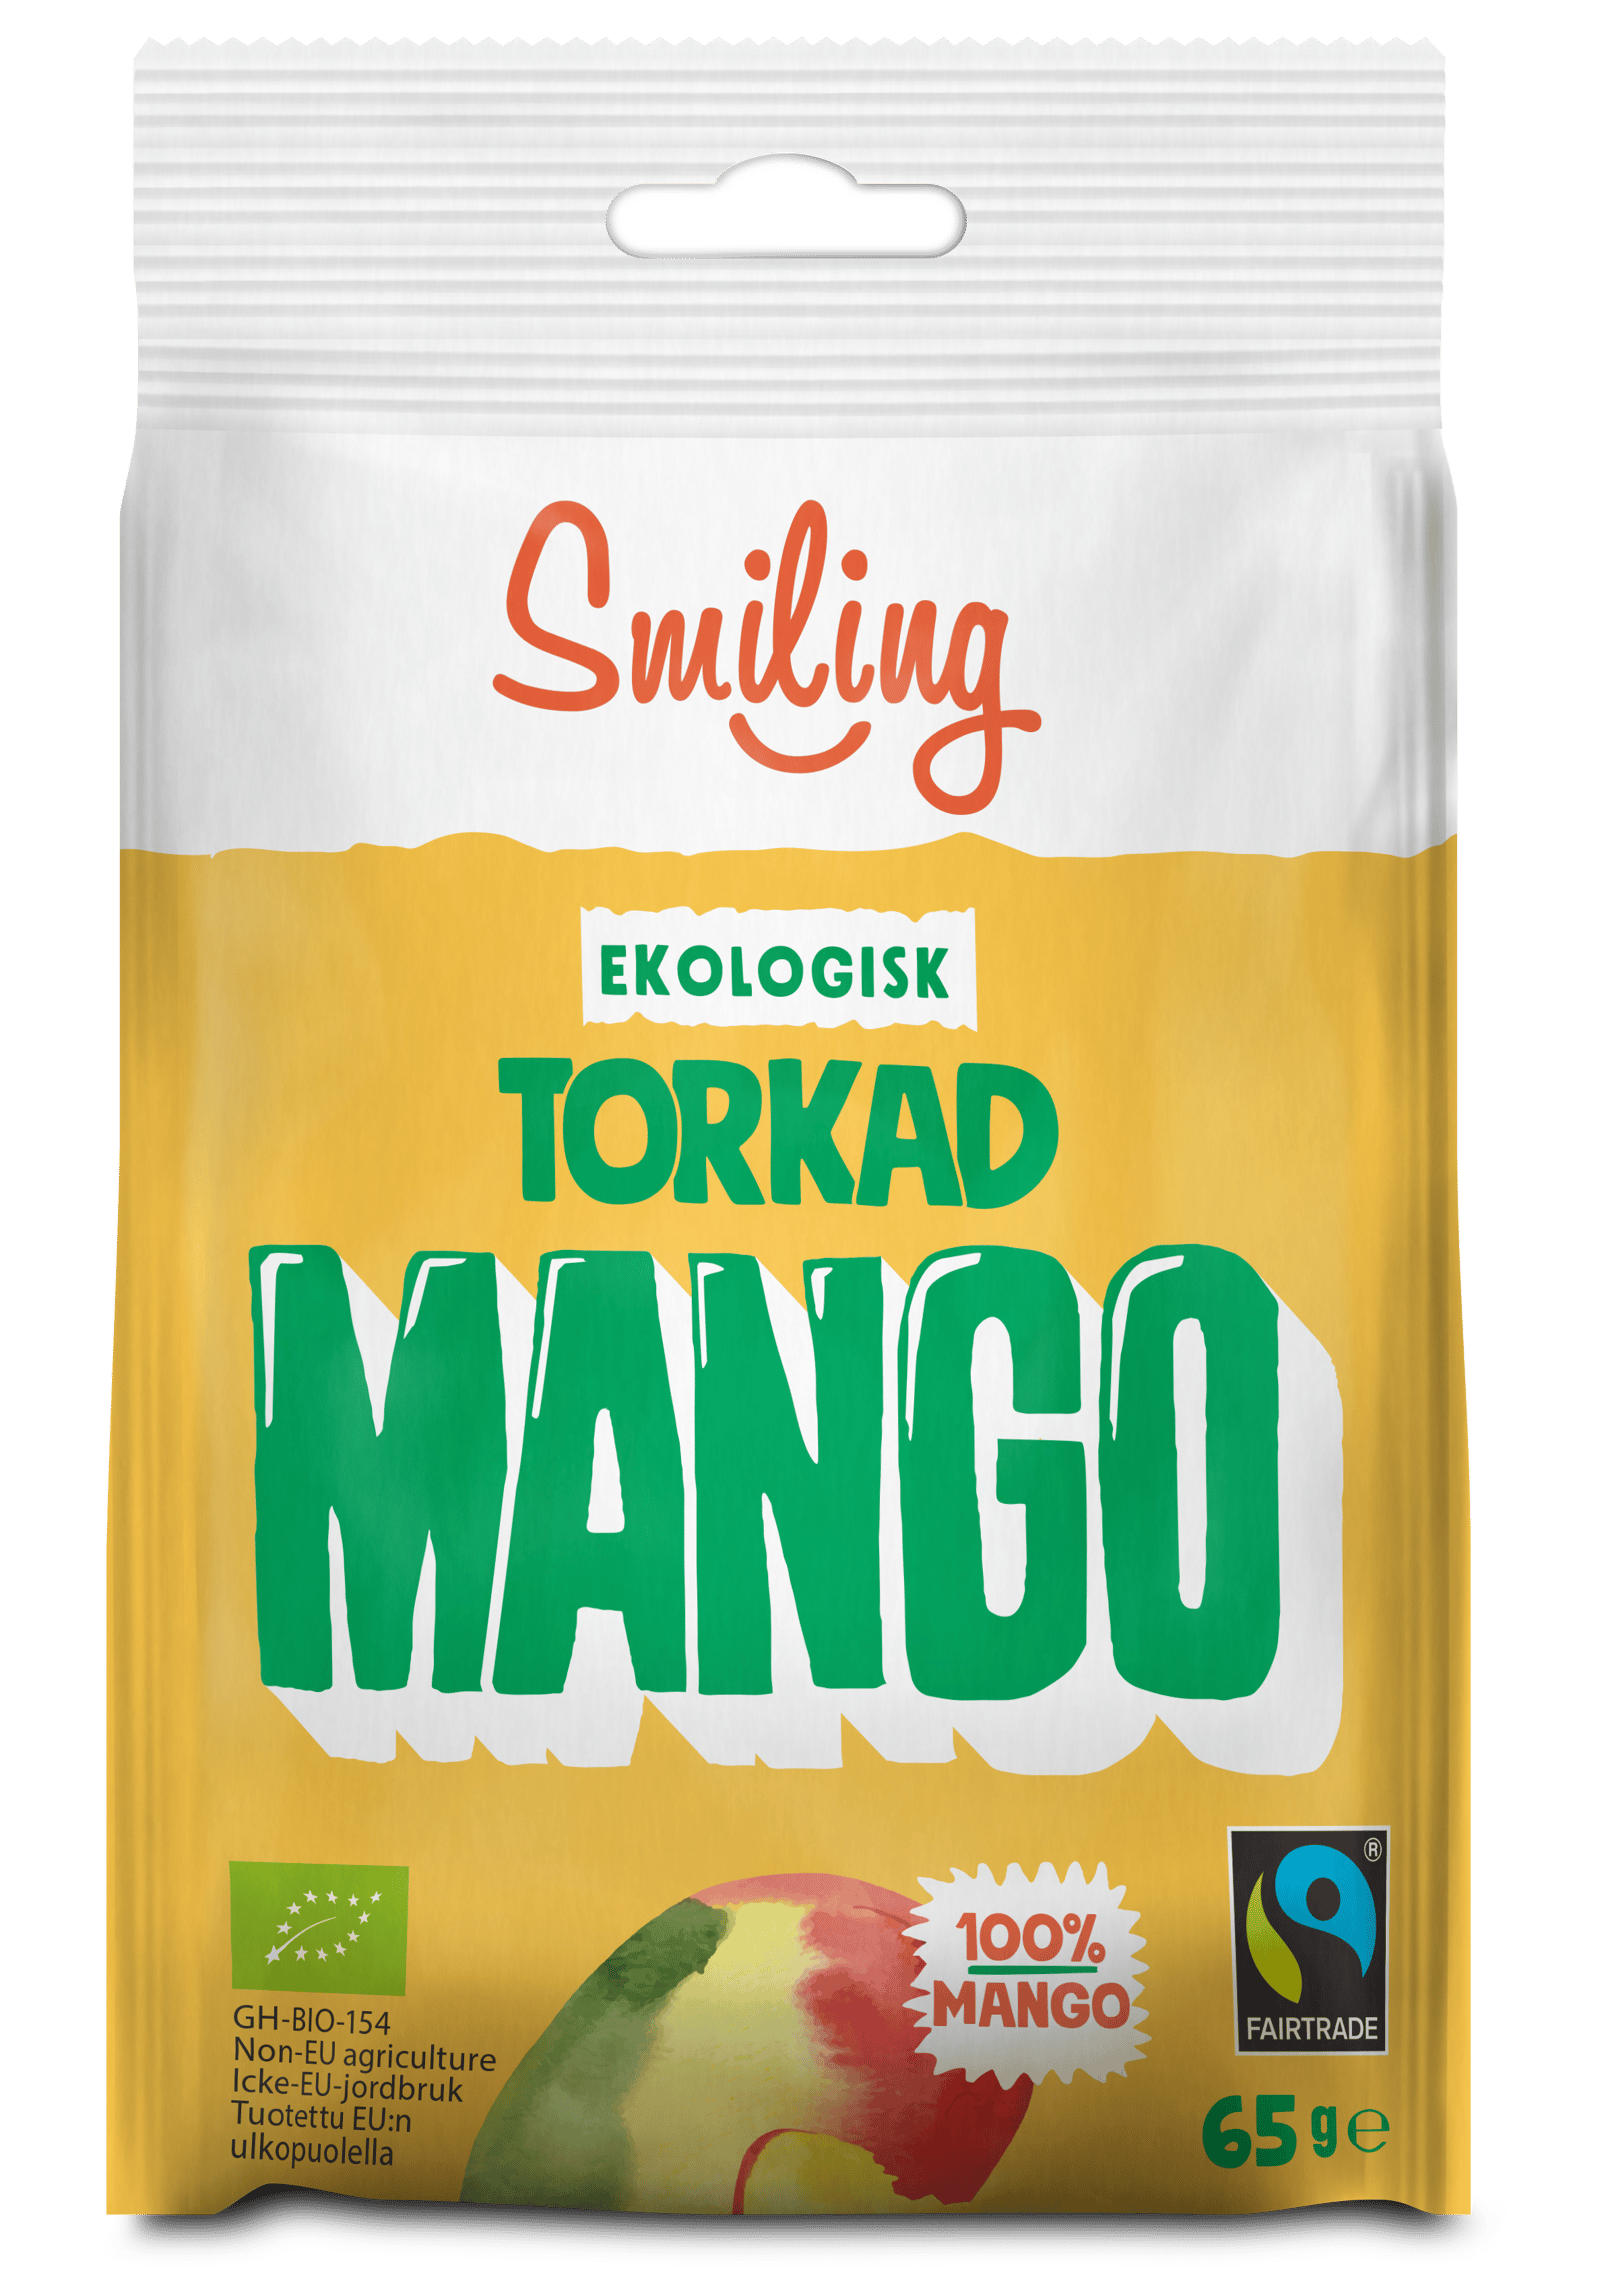 Smiling Torkad Mango 65 g